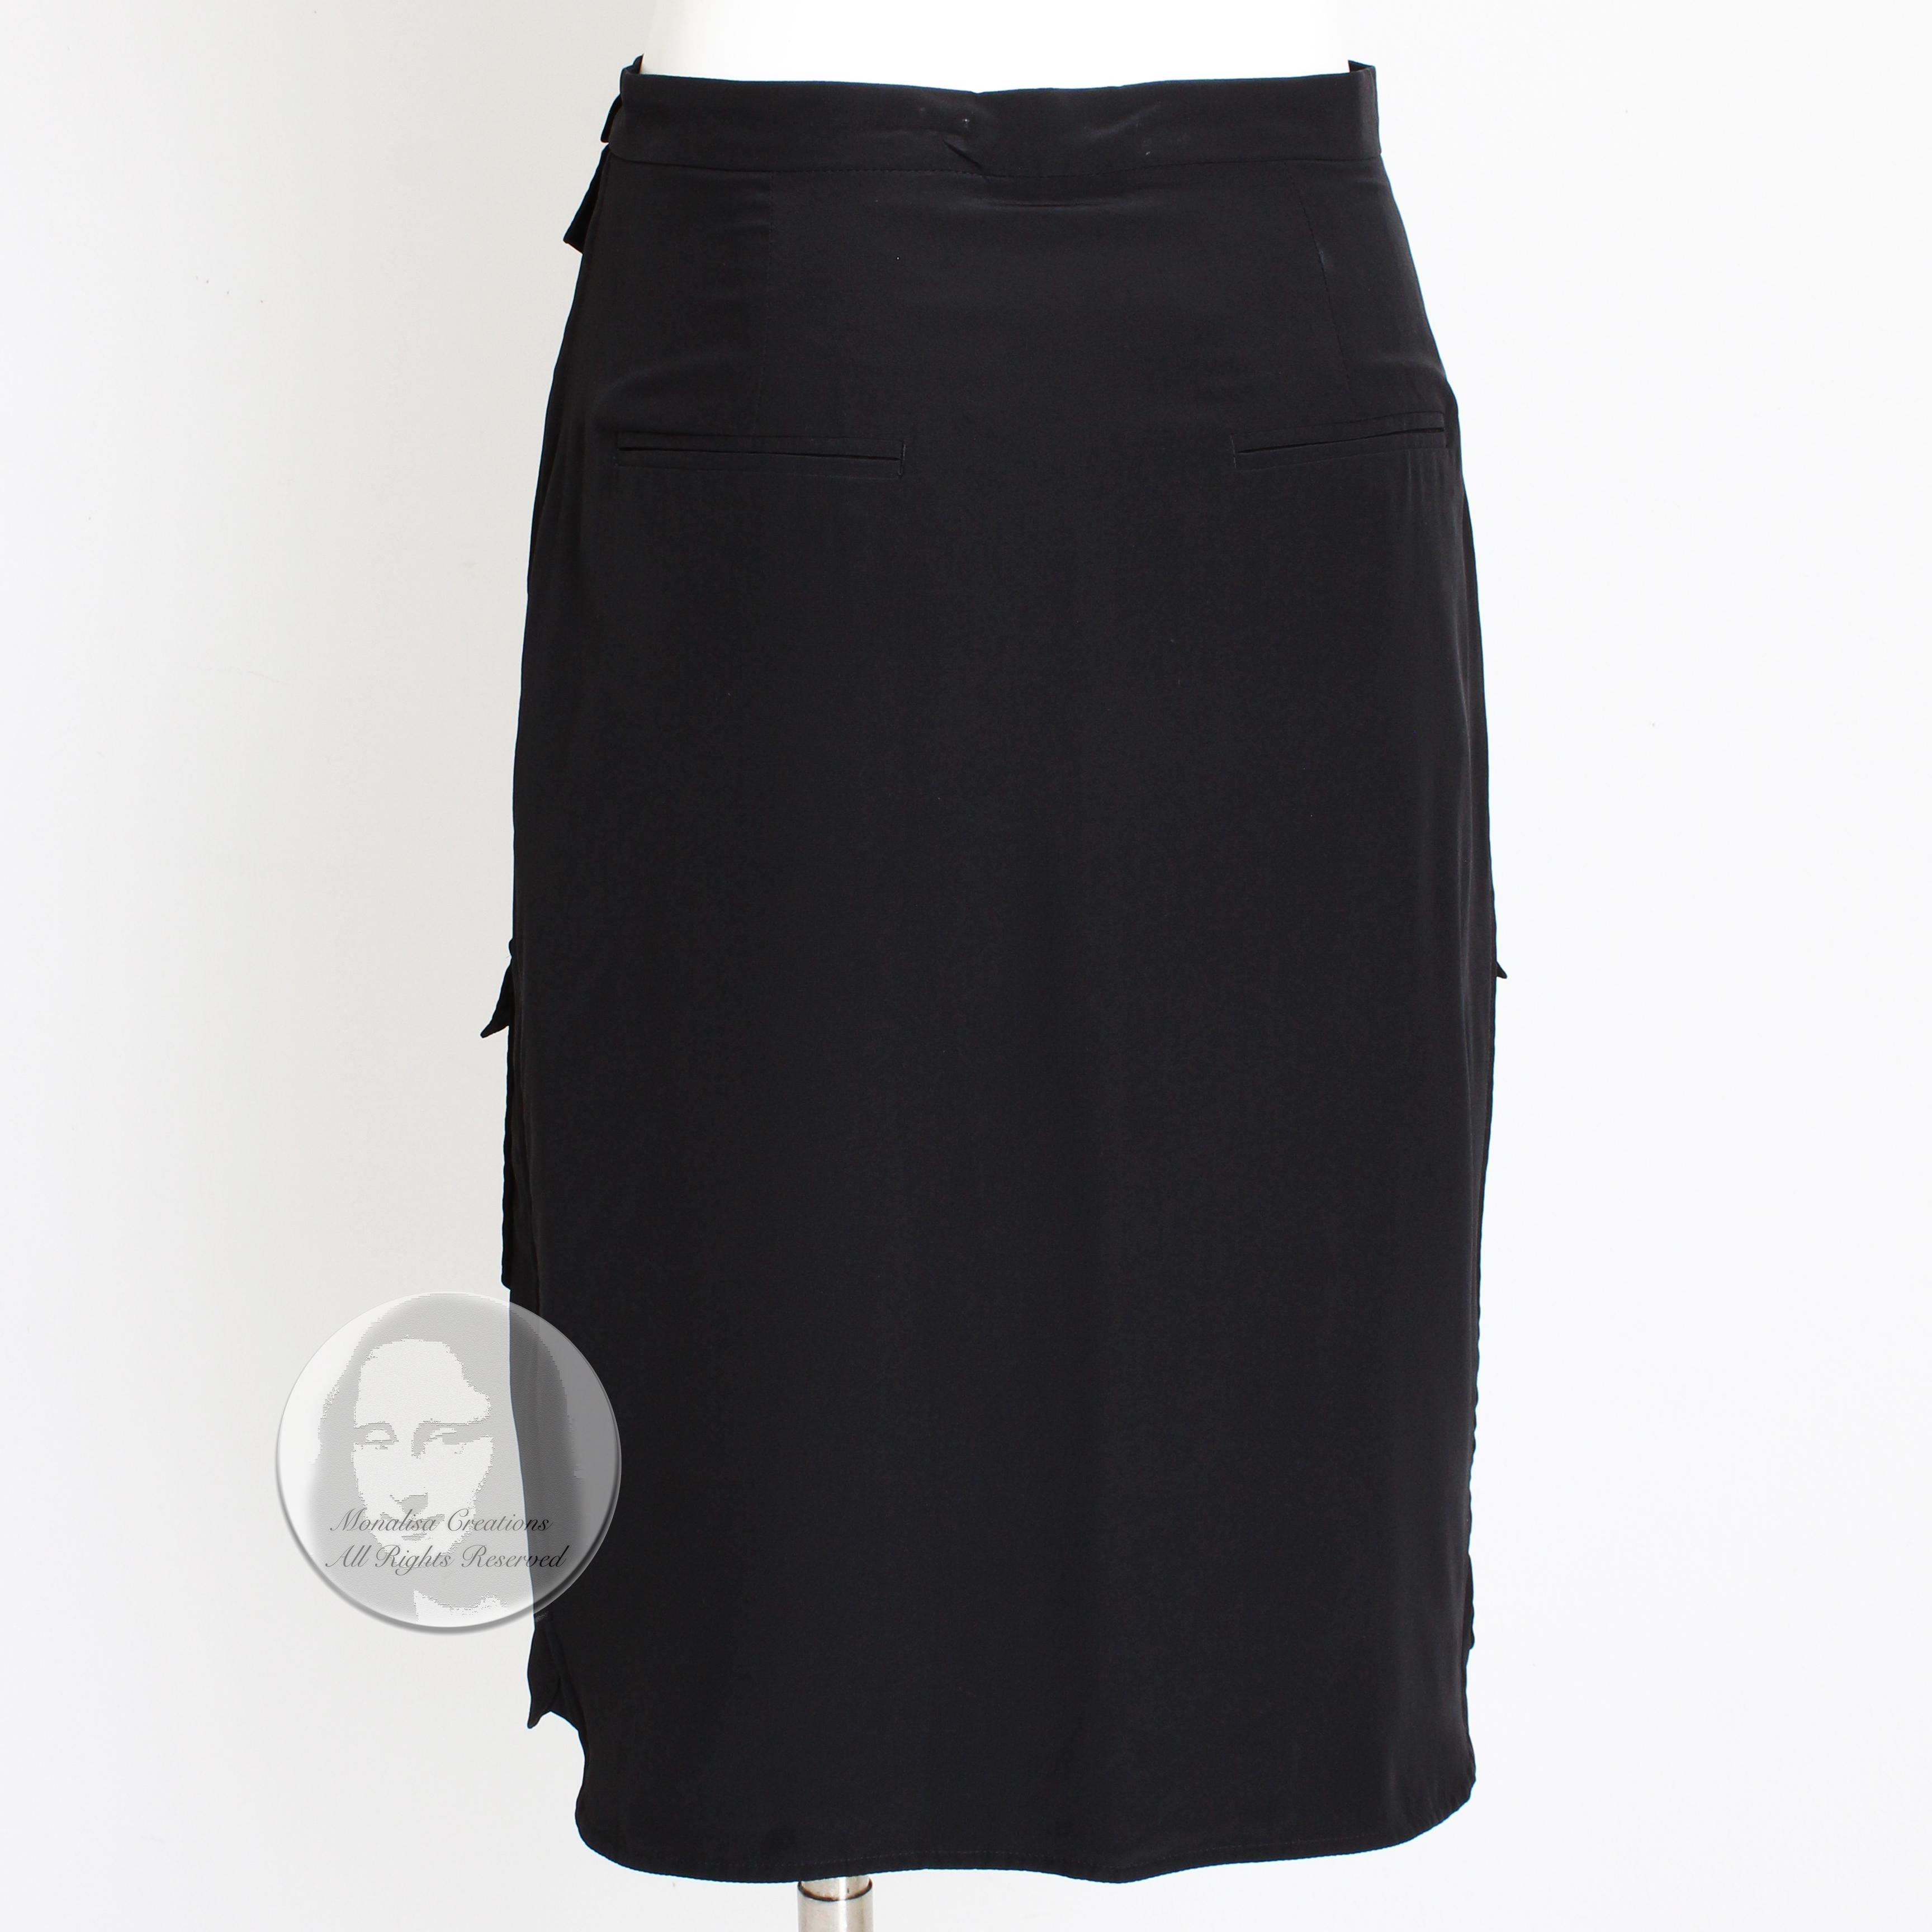 Celine Paris Silk Skirt Button Front Patch Pocket Phoebe Philo Black NWT Size 38 2